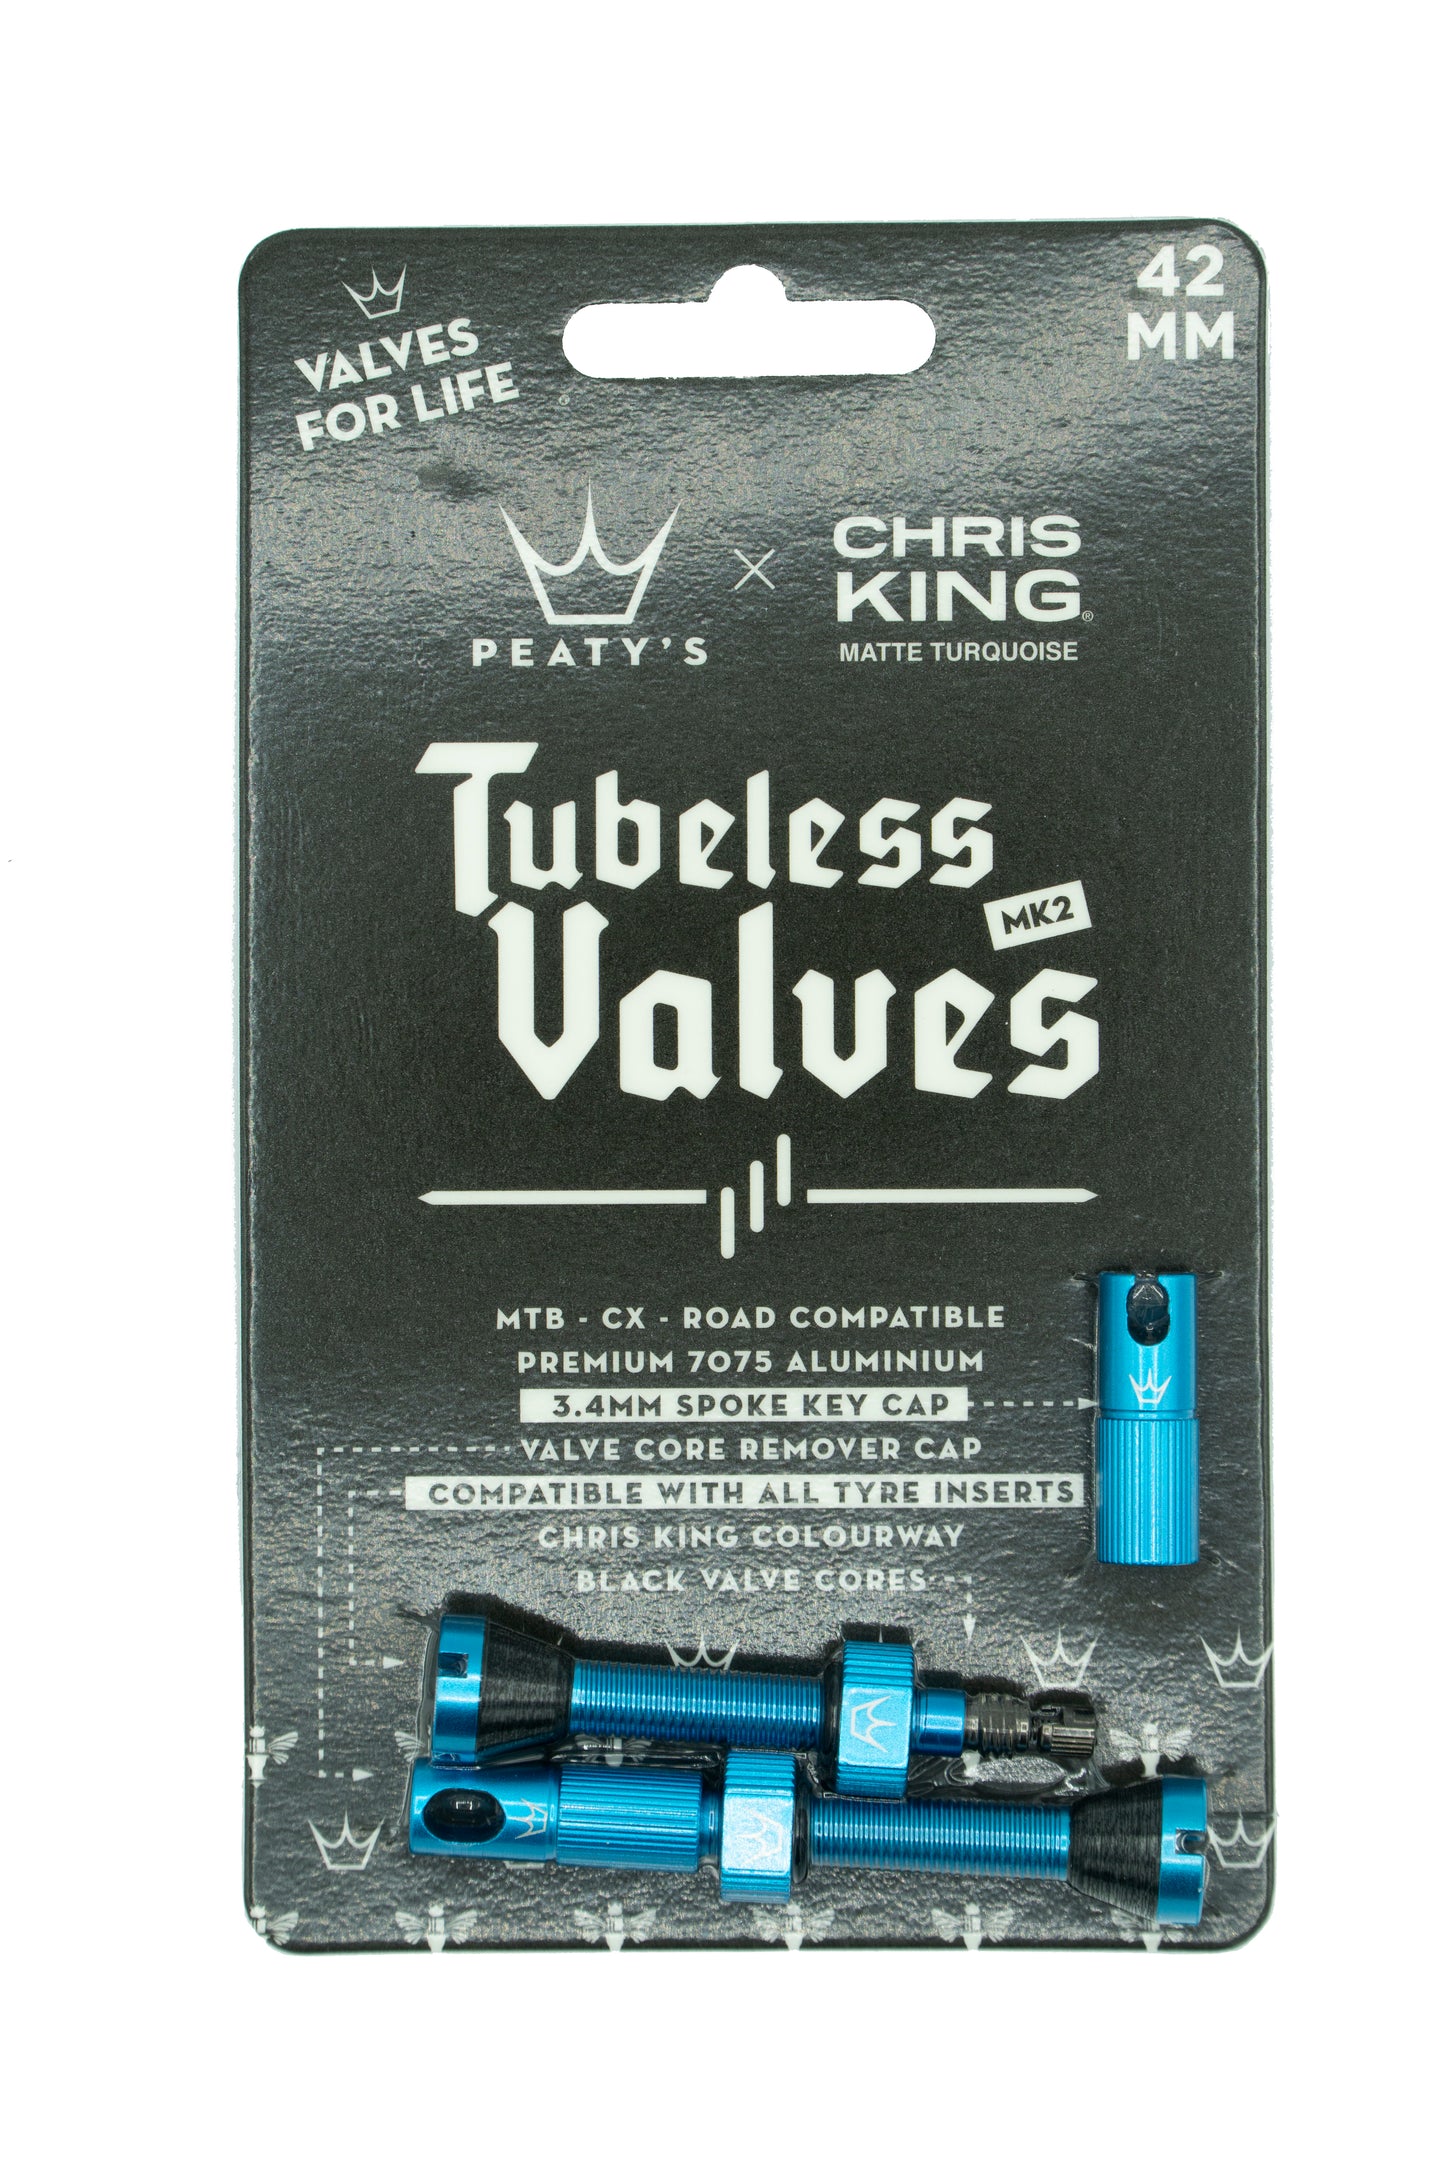 Peaty's Chris King Tubeless valves MK2 Turquoise - 42mm